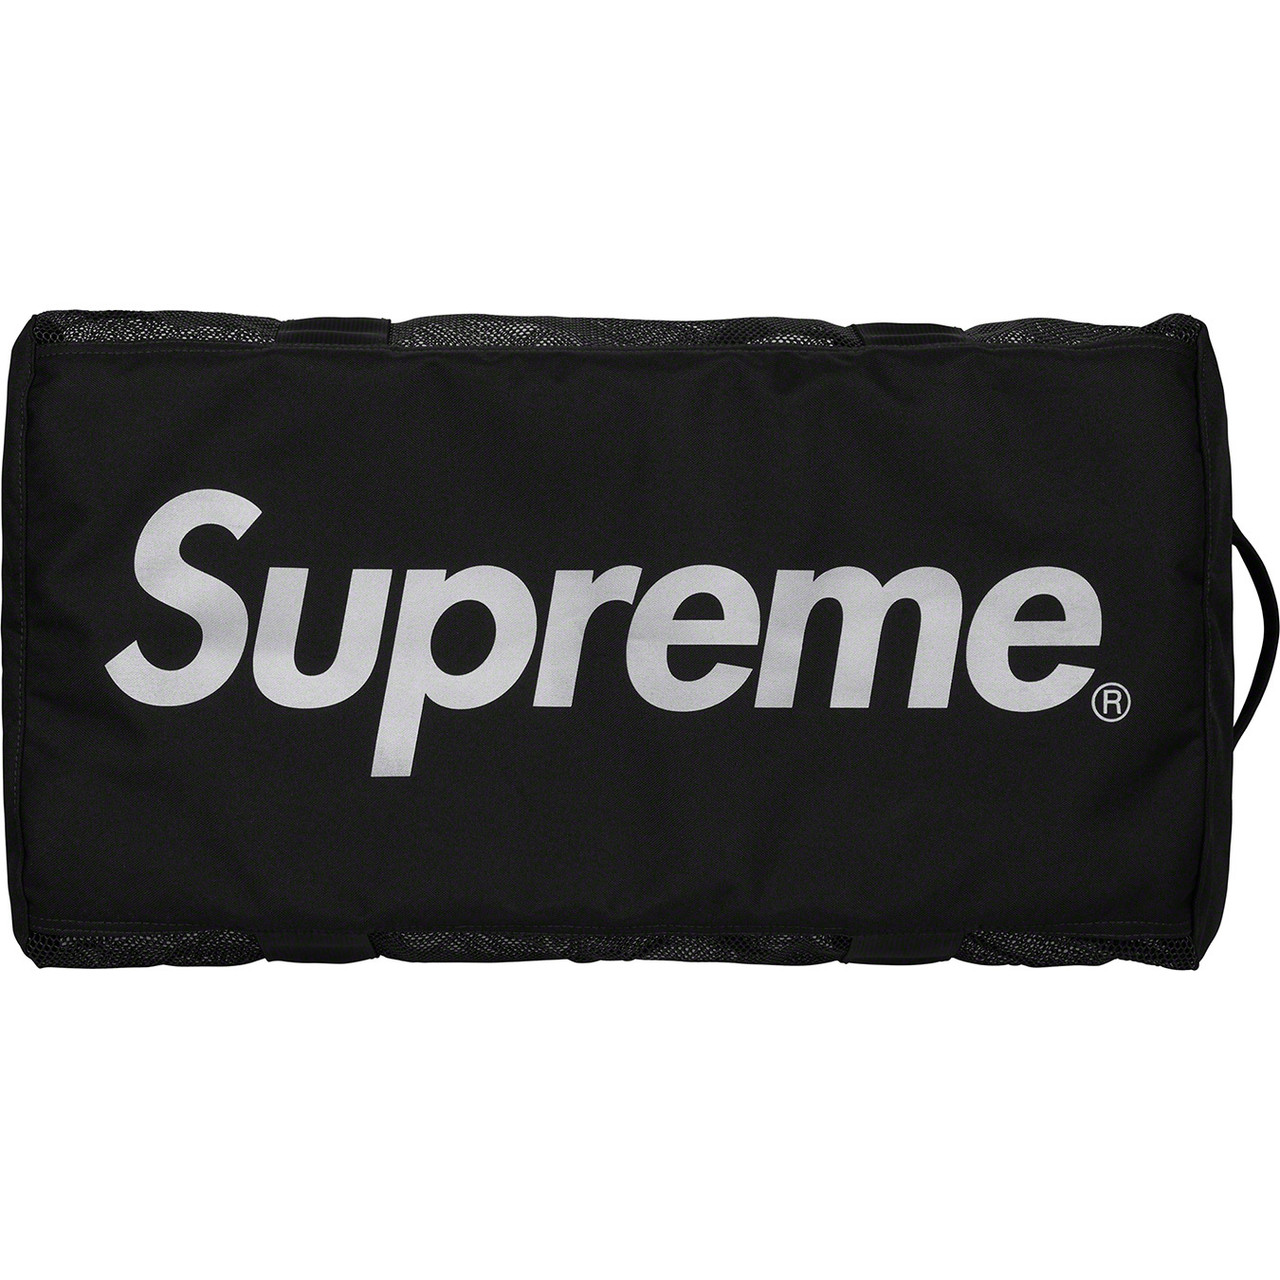 Supreme Duffle Bag (FW18) Black - FW18 - US